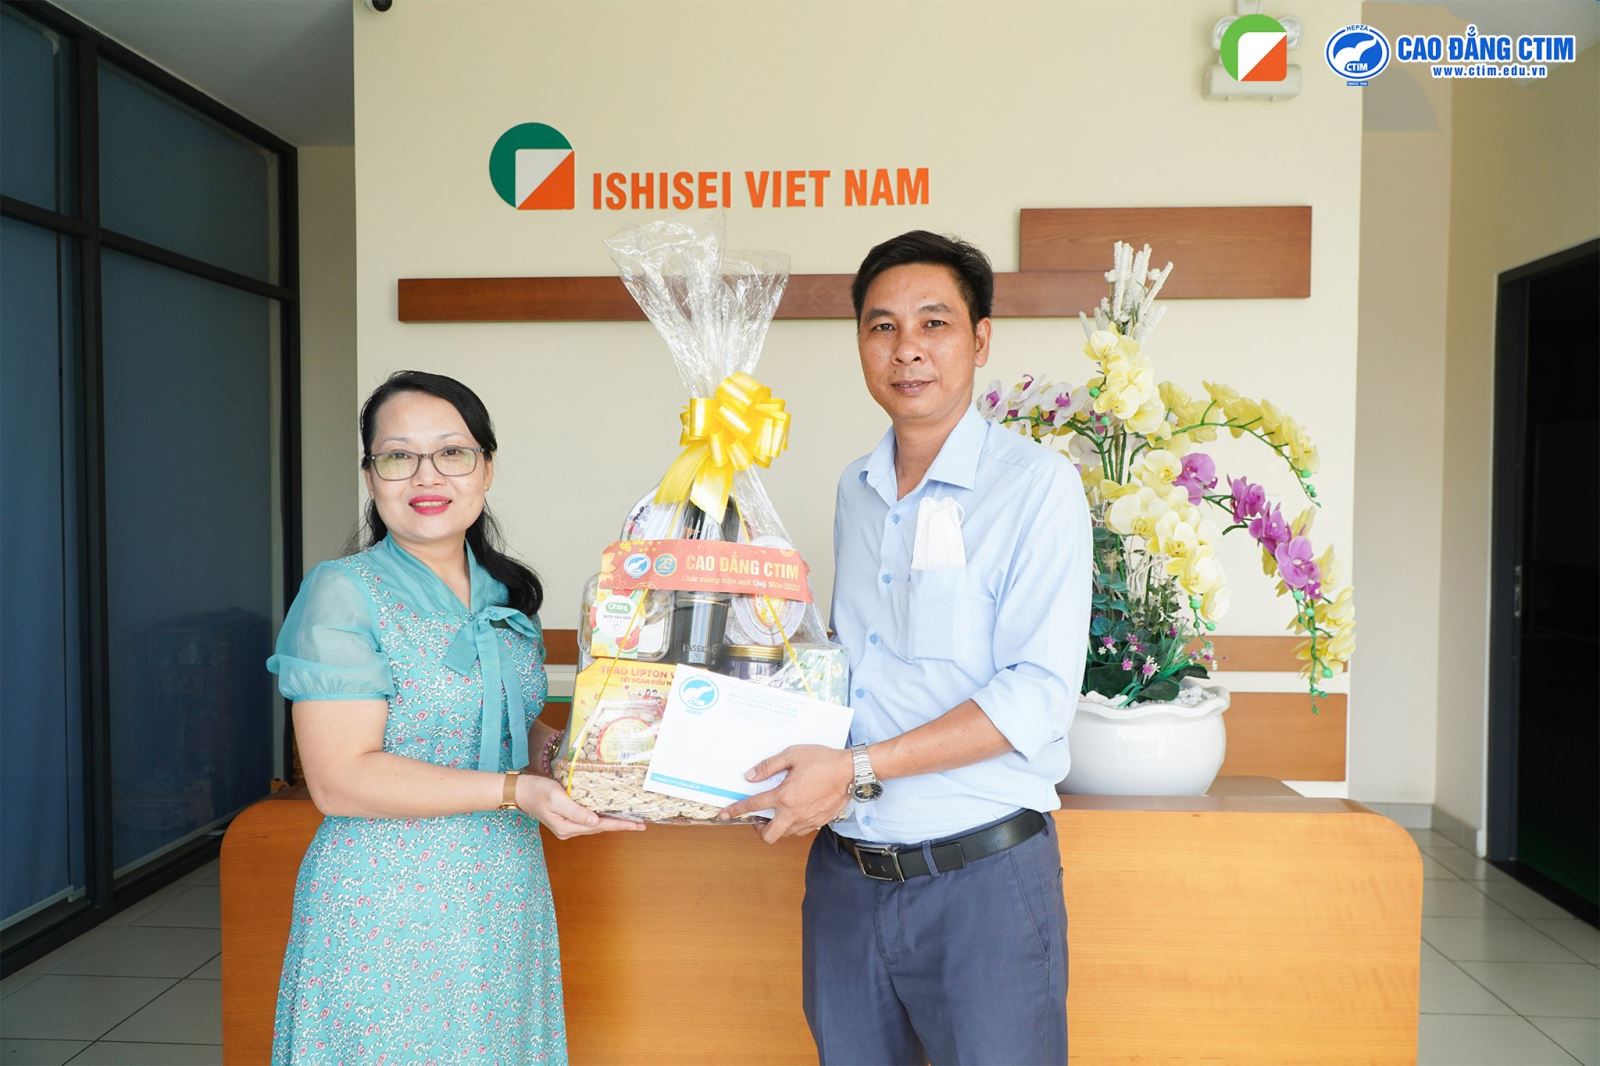 Ghé thăm Cựu sinh viên Cơ khí và chúc Tết công ty TNHH Ishisei Việt Nam